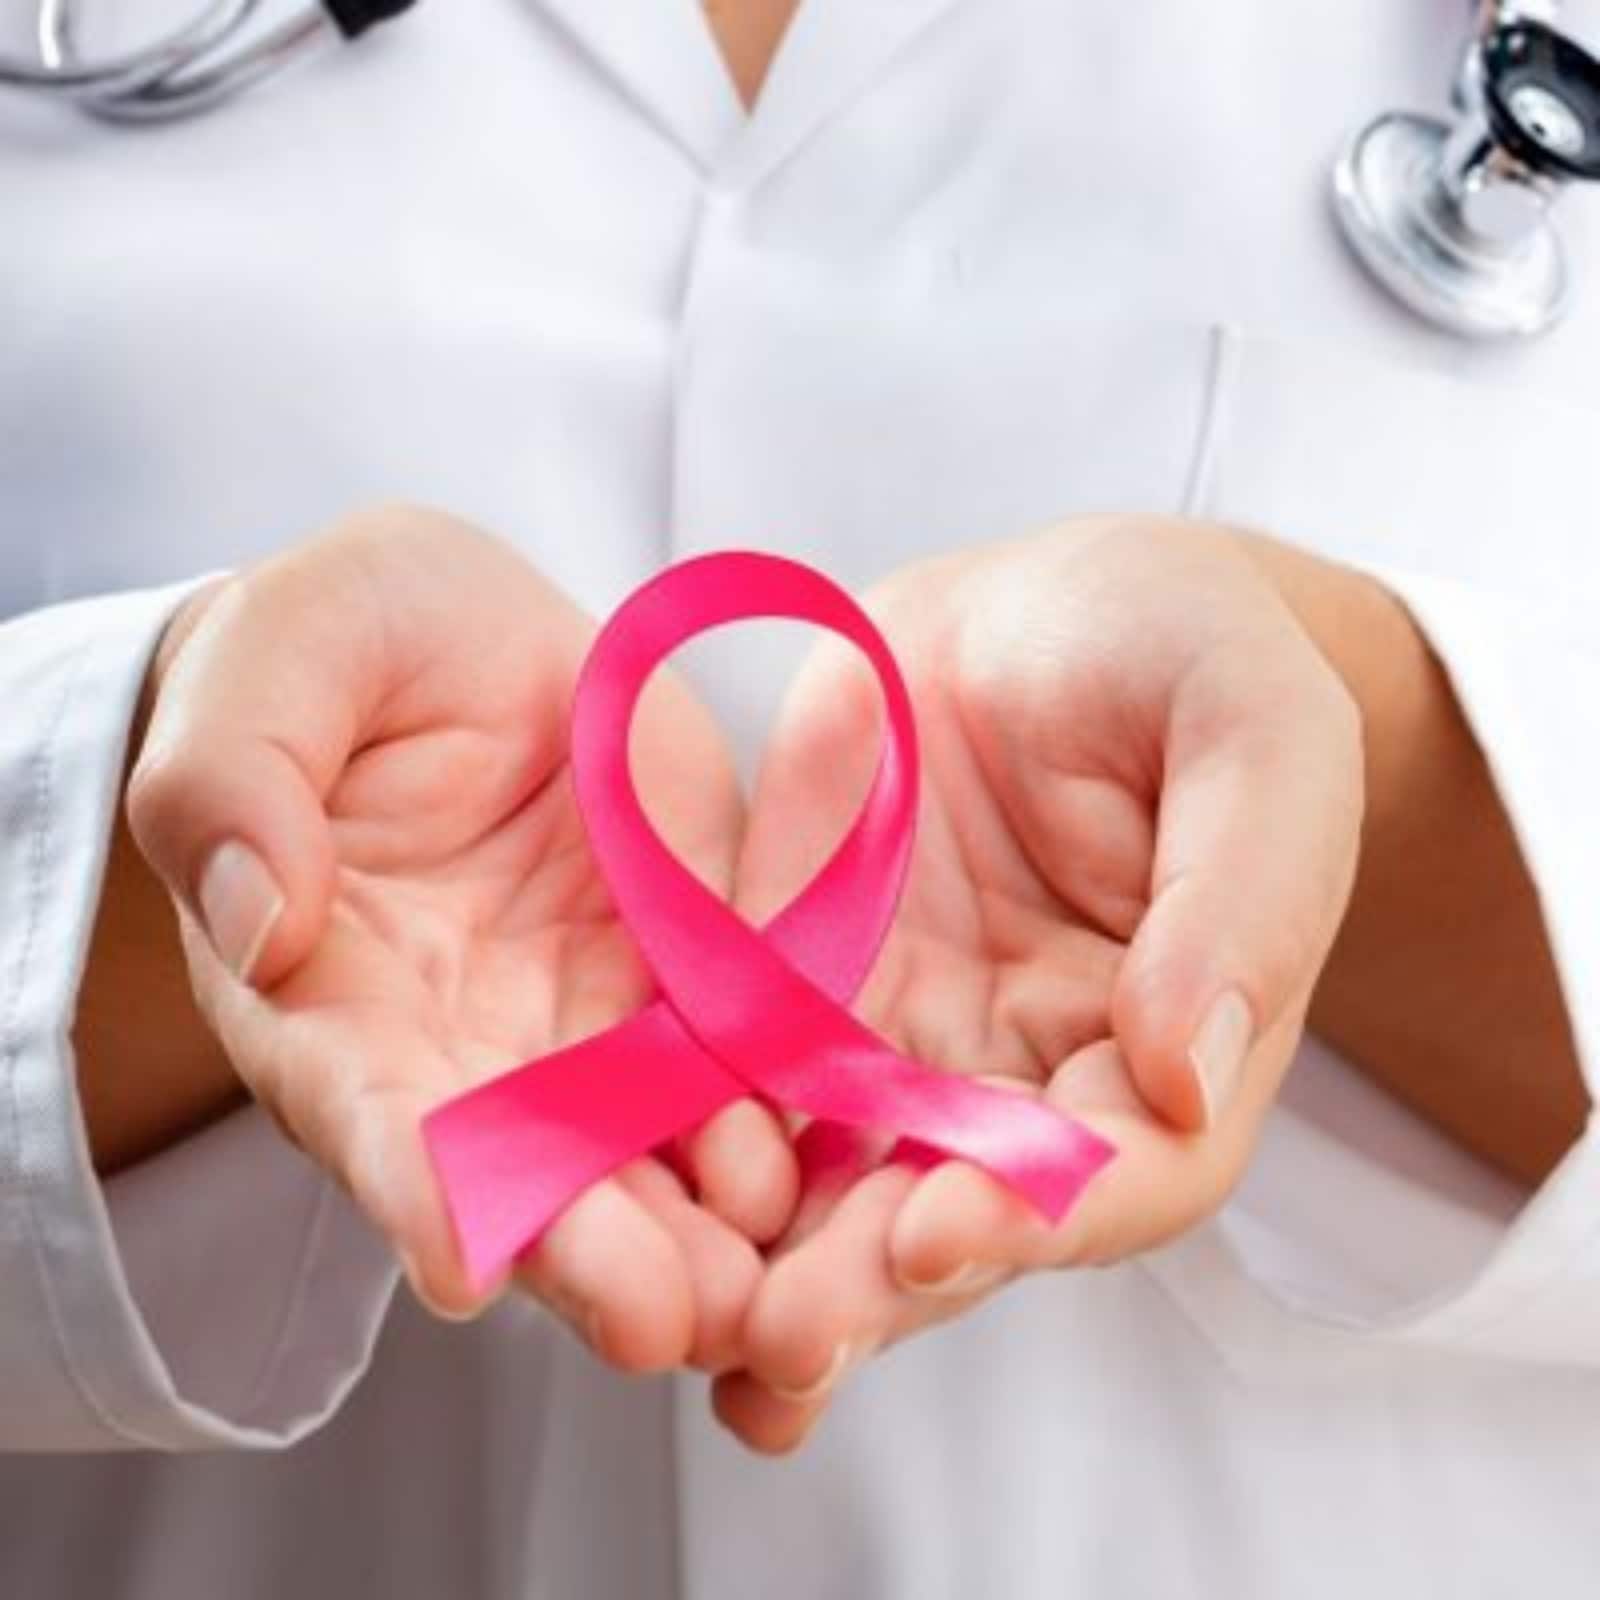 Een uit 8 vroue kry borskanker: Net mammogramme kan vroeë kanker opspoor